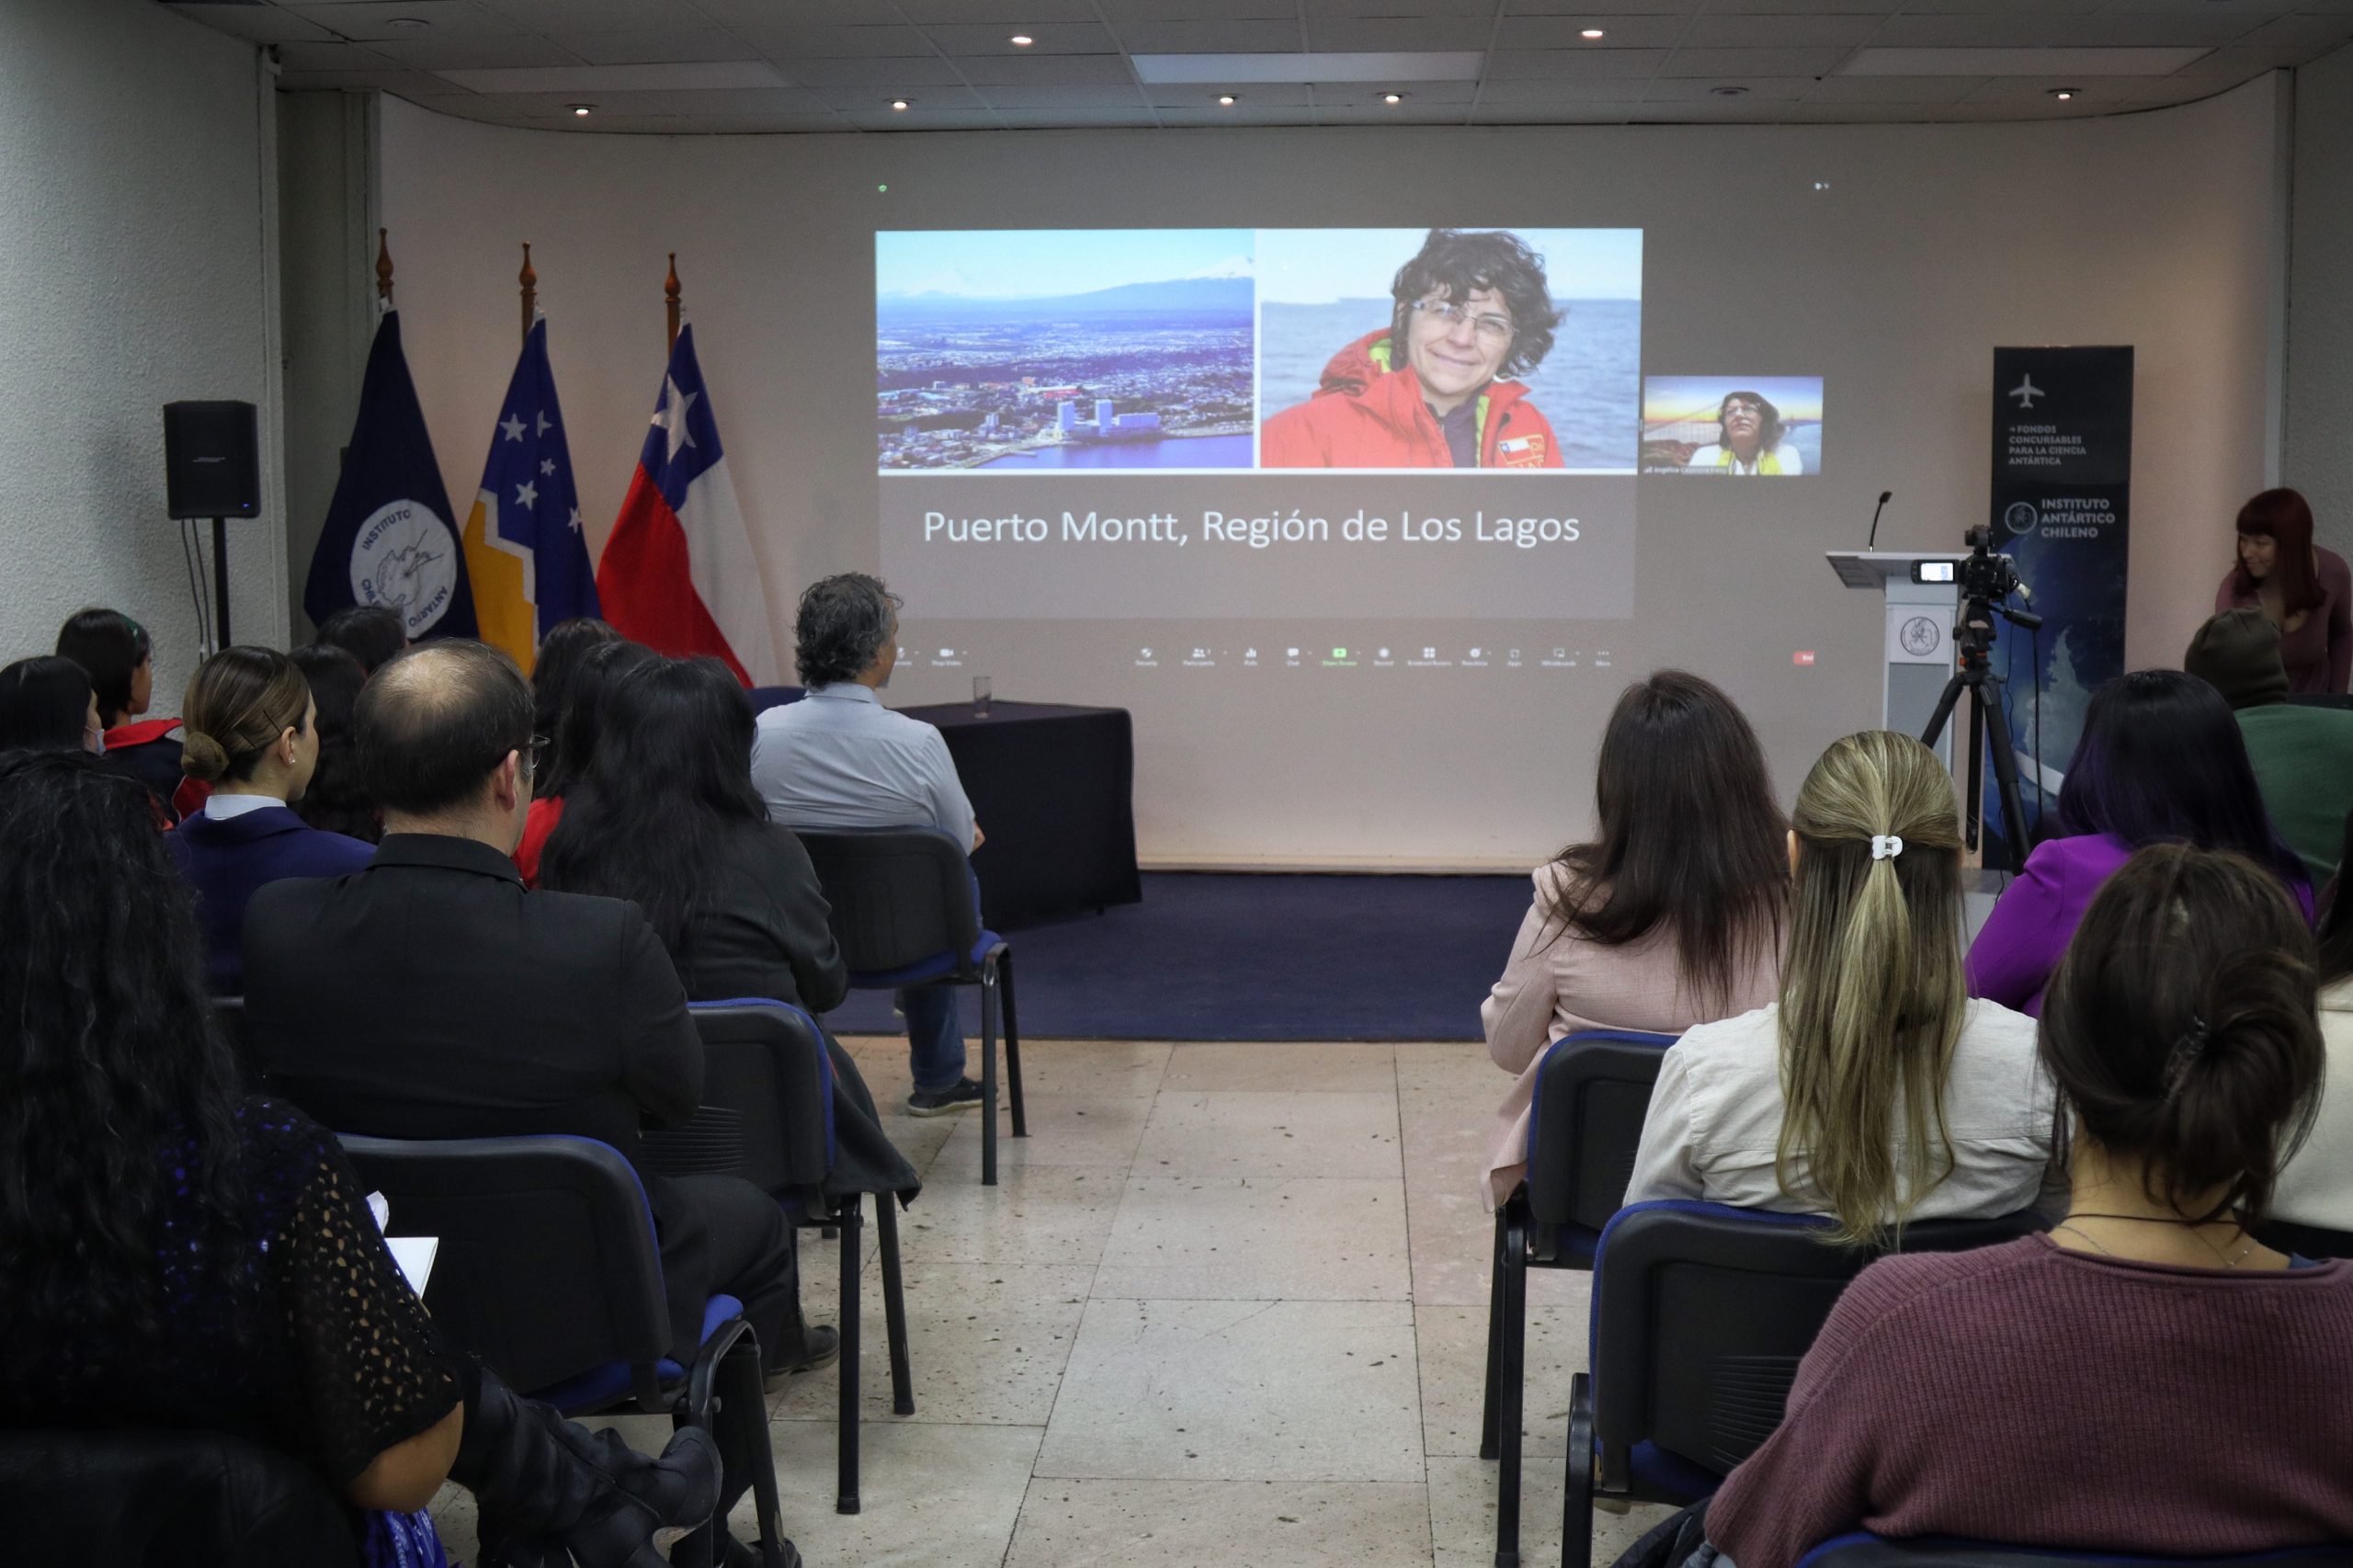 Mujeres científicas antárticas presentaron visiones y testimonios en seminario del INACH desde Punta Arenas